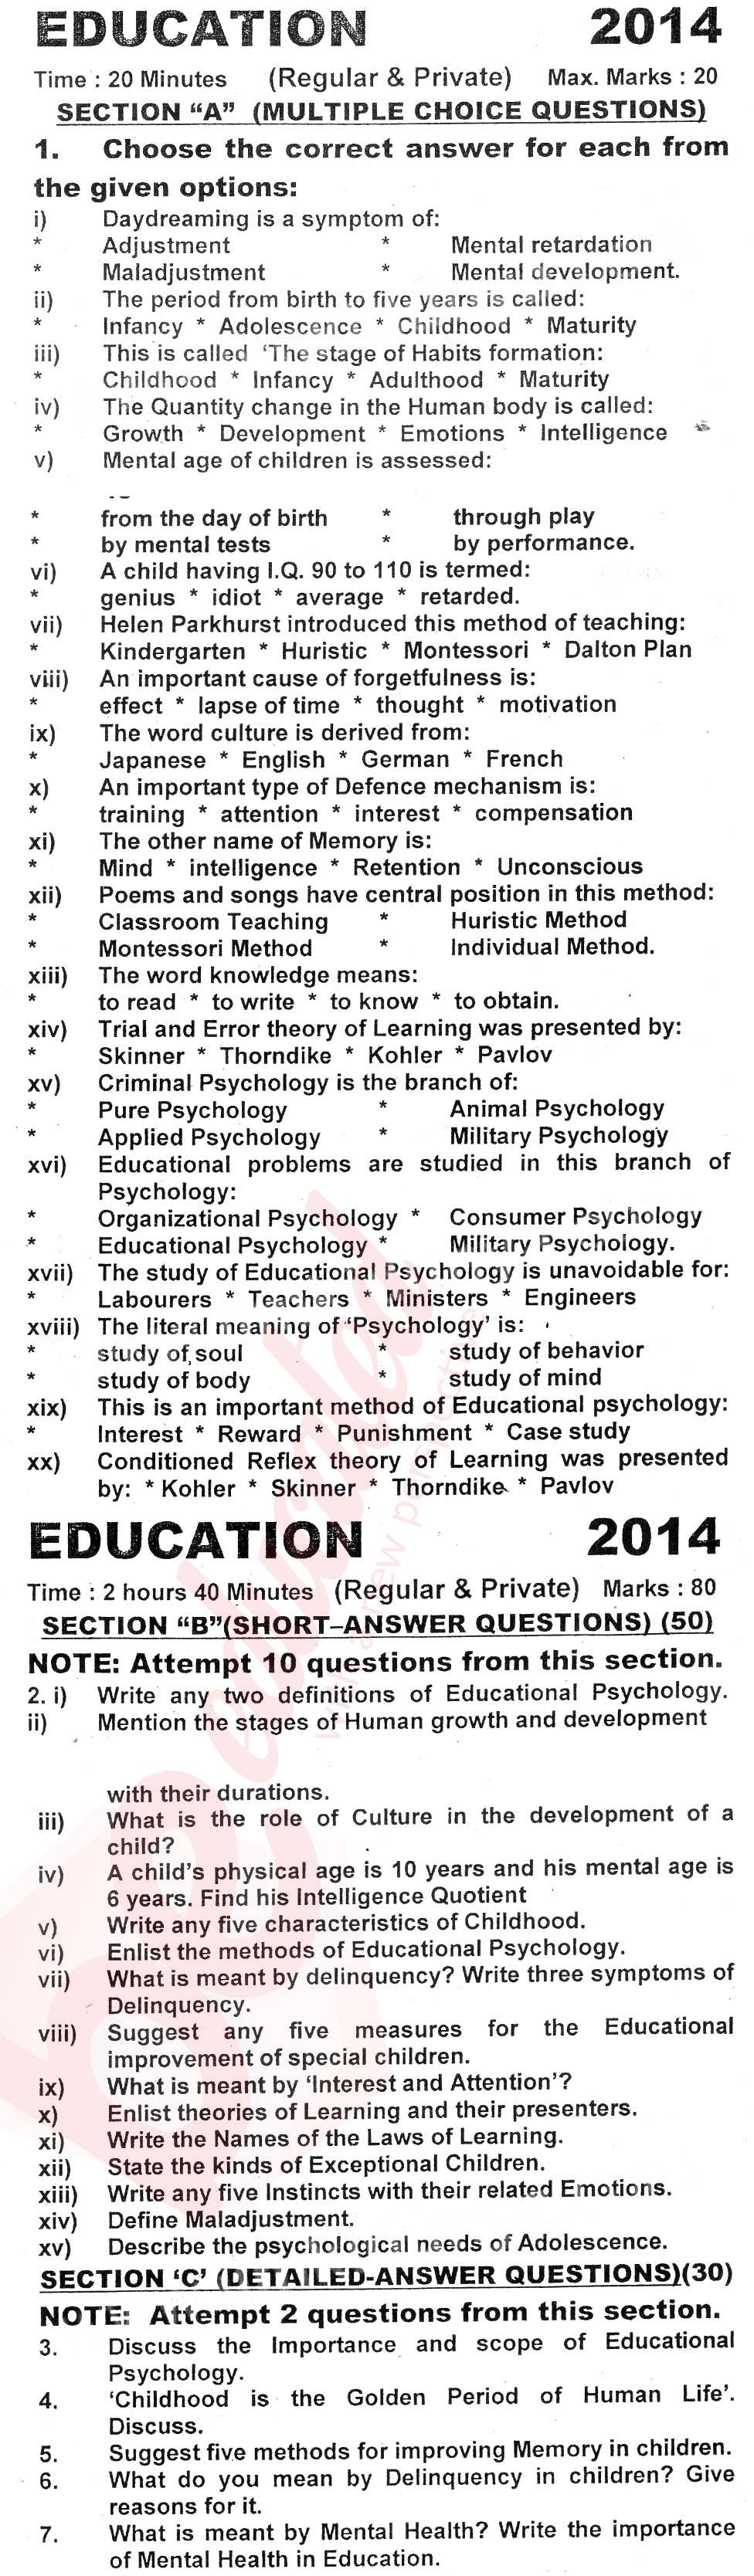 Education FA Part 1 Past Paper Group 1 KPBTE 2014